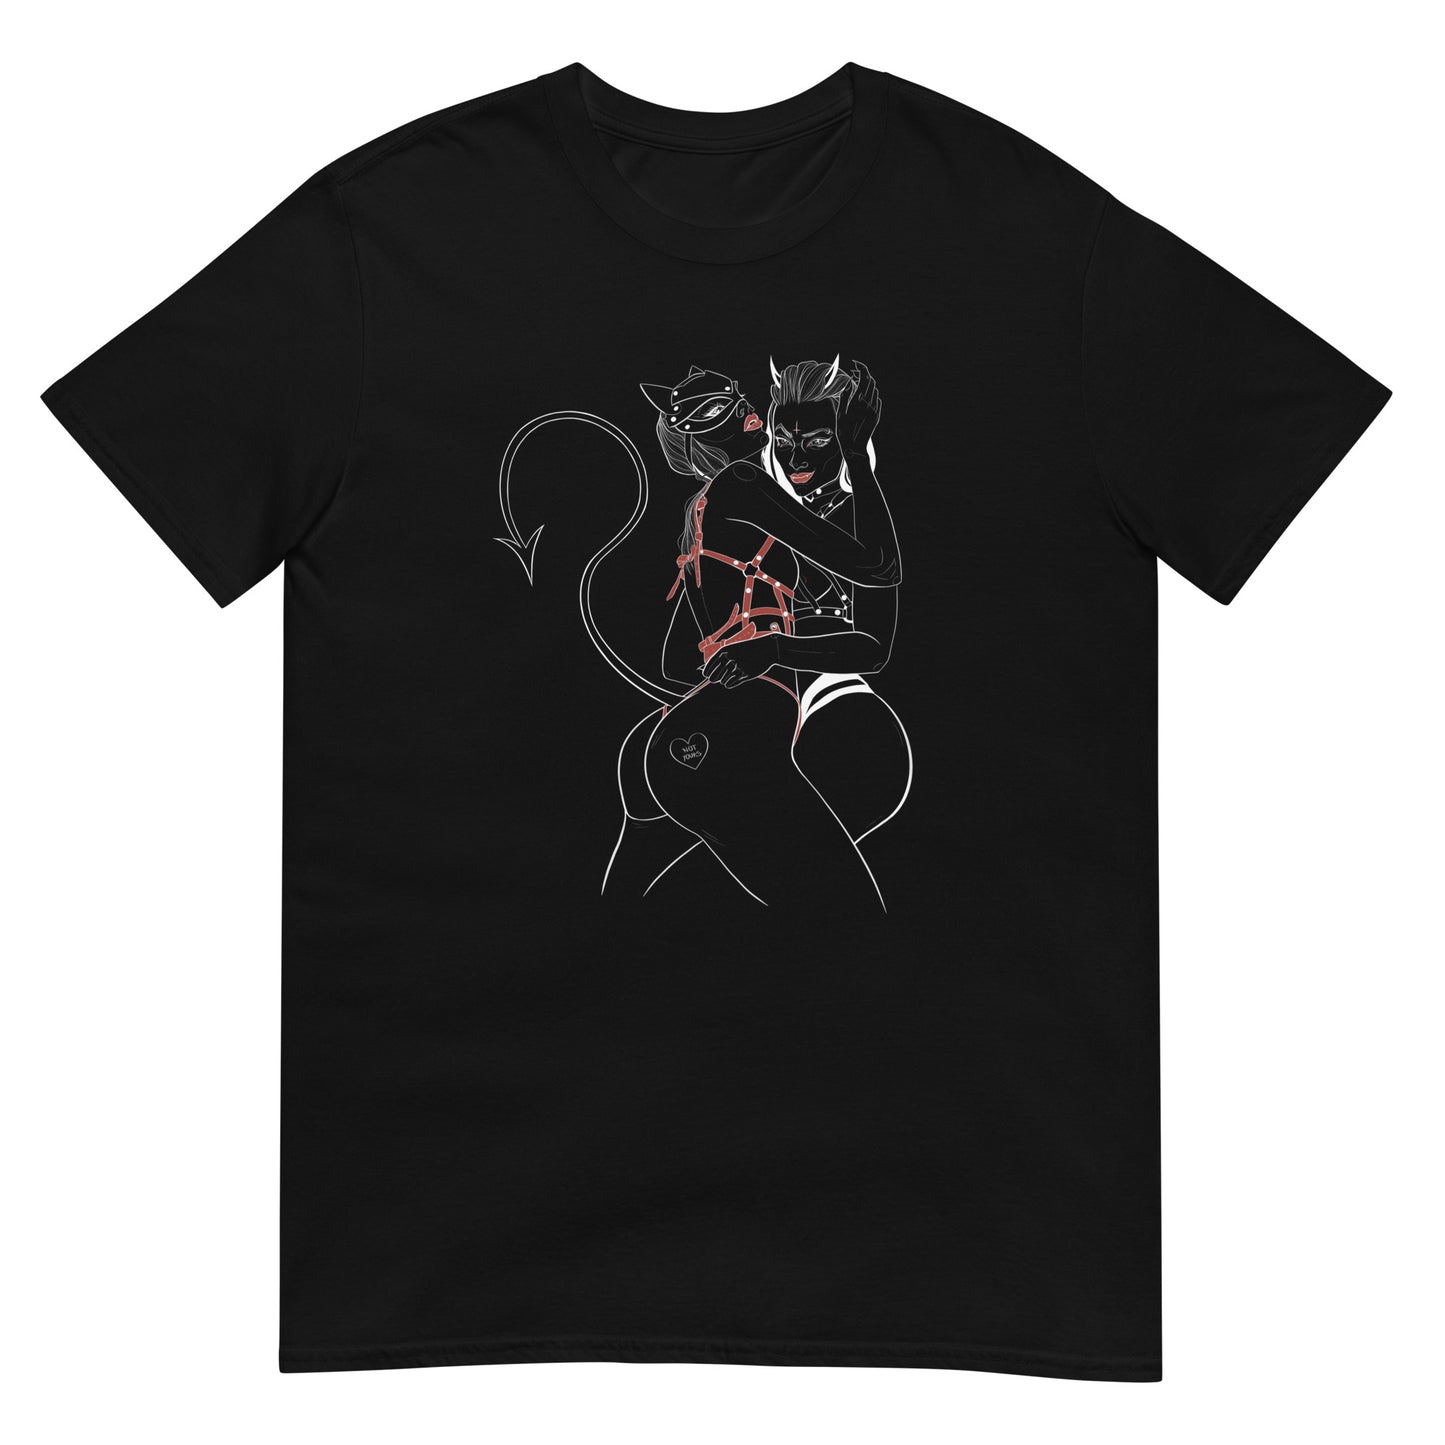 Darklily Art Playful Little Demons Design T-Shirt